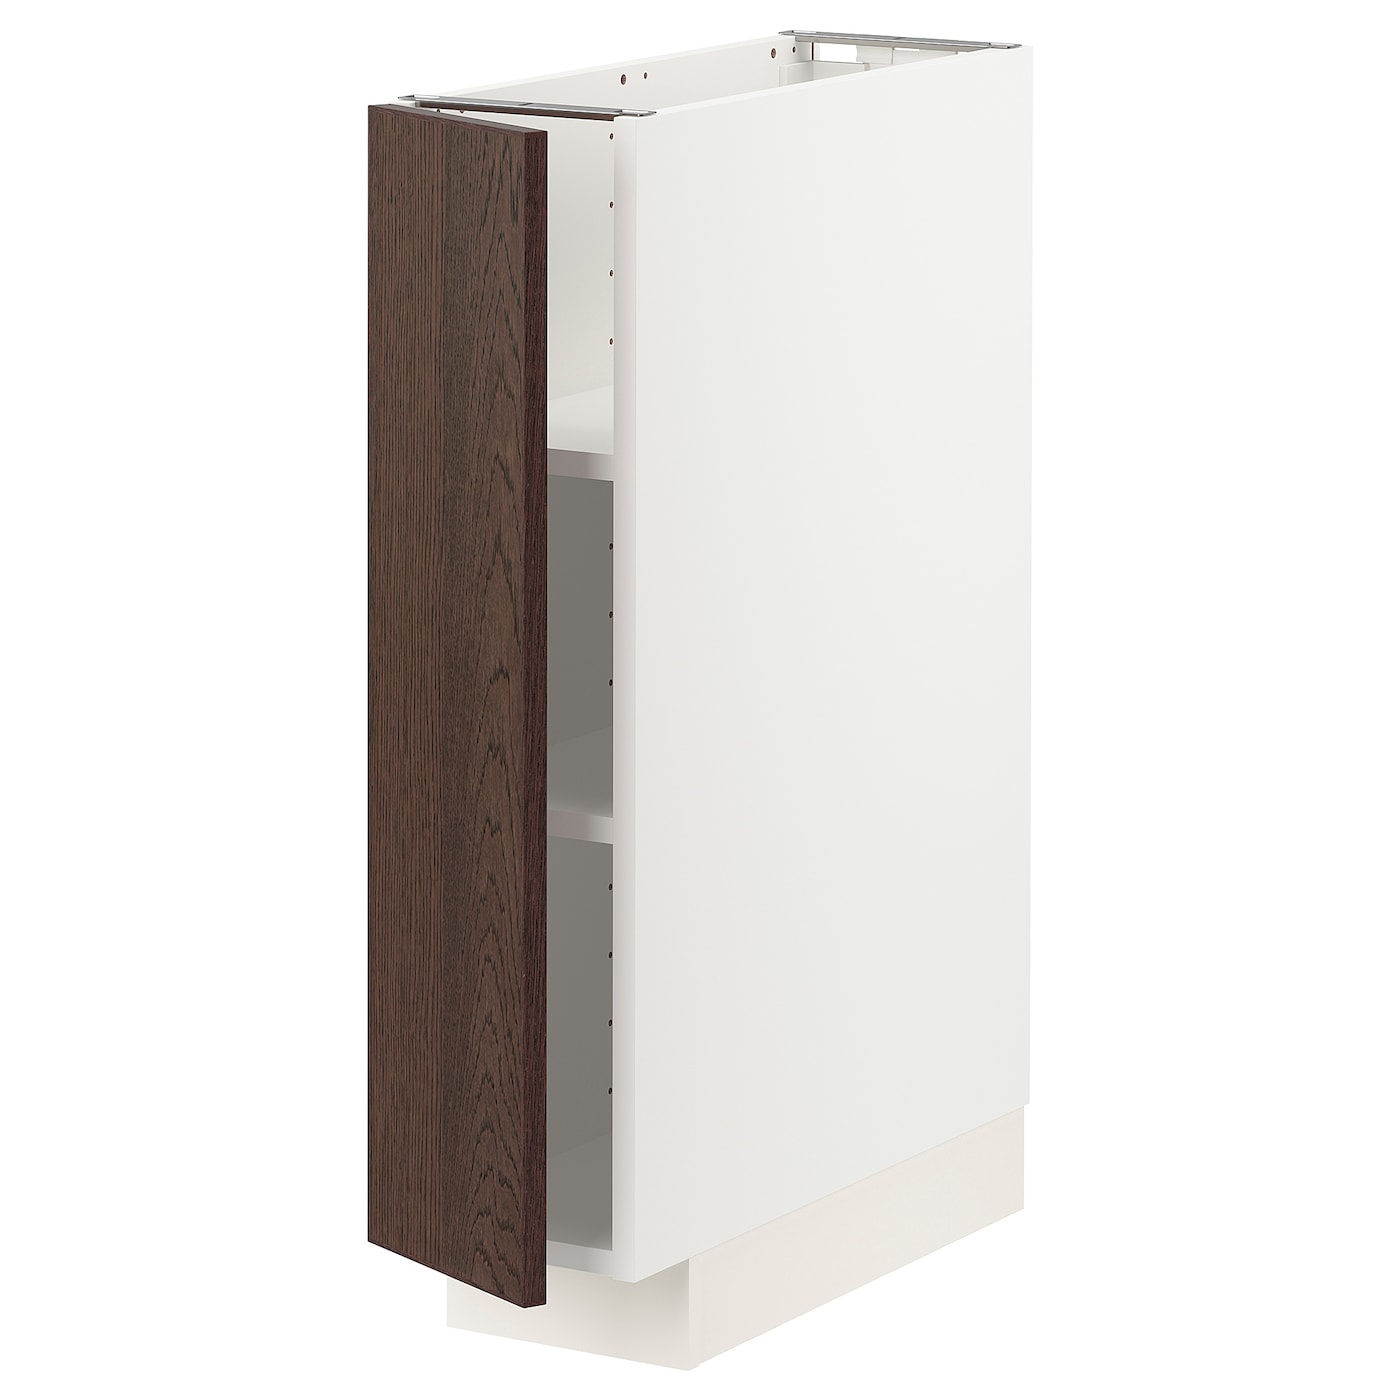 Напольный шкаф - IKEA METOD, 88x62x20см, белый/темно-коричневый, МЕТОД ИКЕА